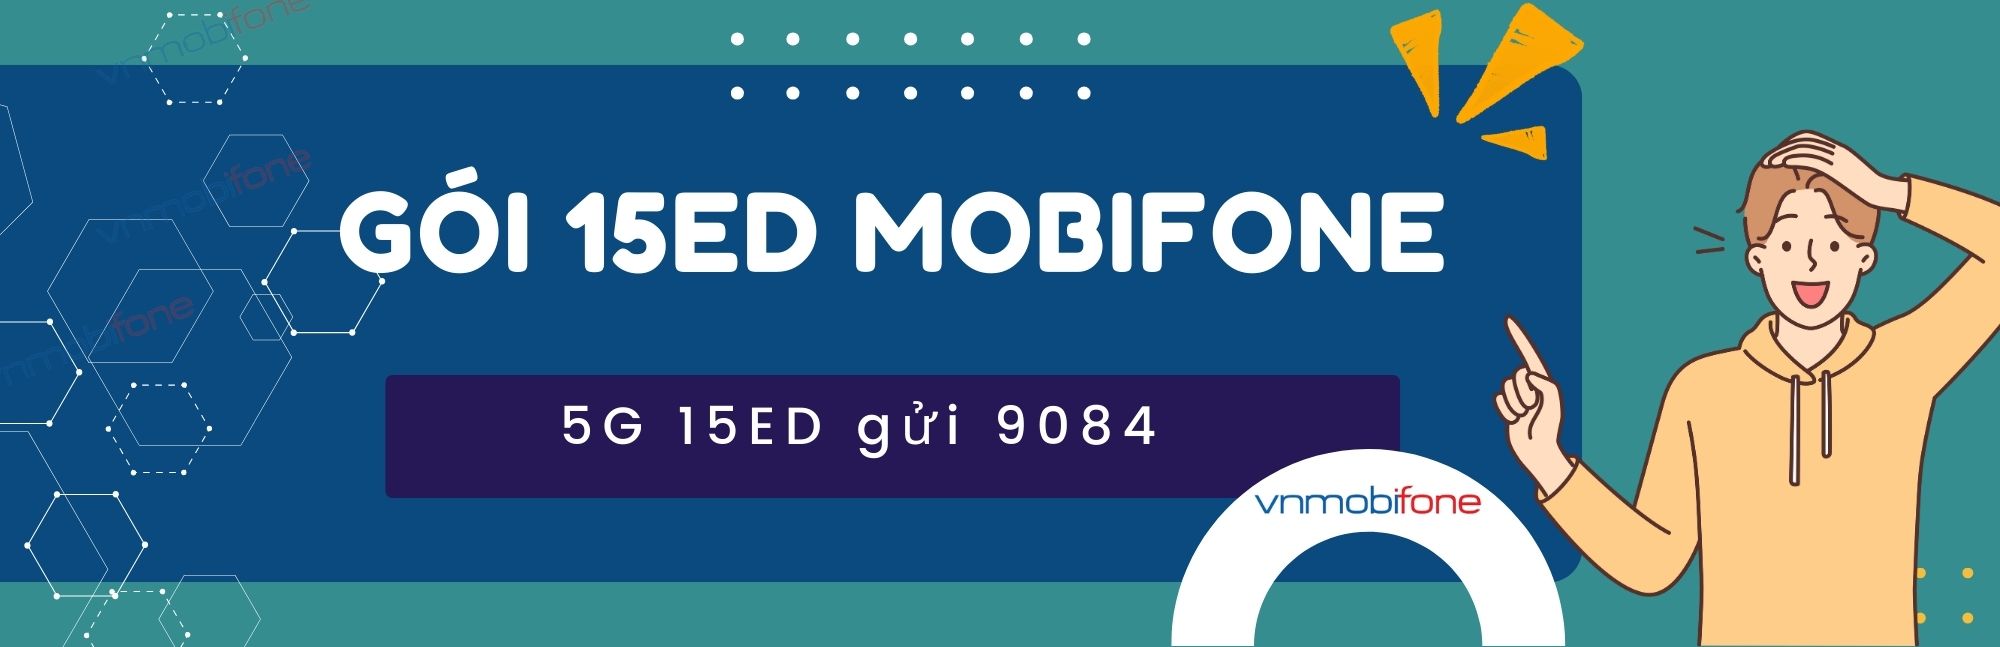 đăng ký gói 15ed mobifone